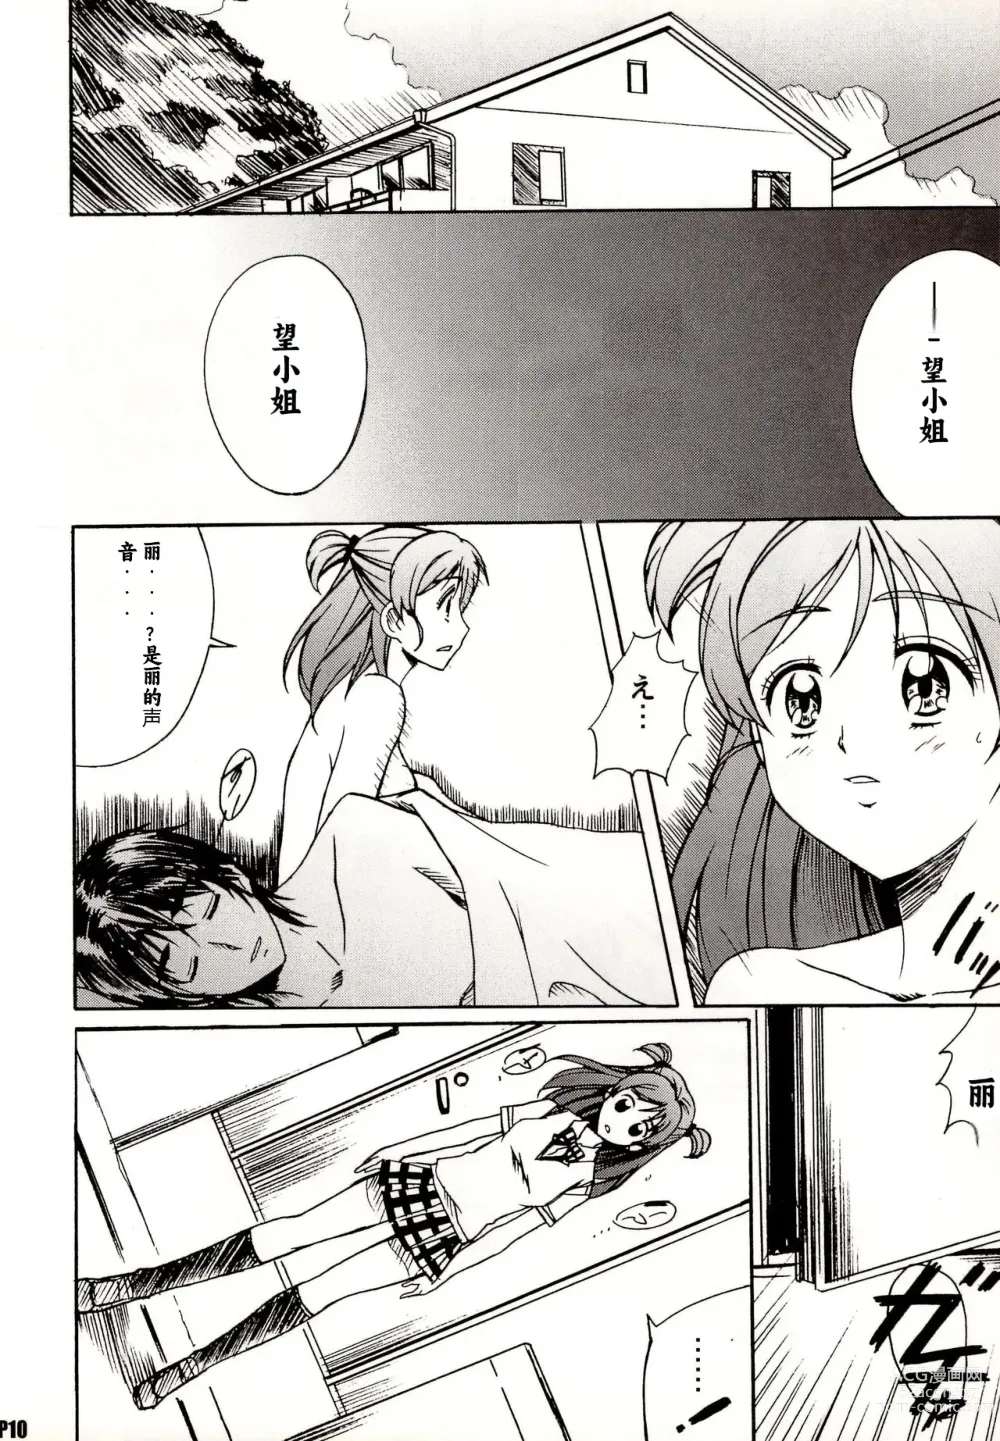 Page 10 of doujinshi Otonanopuri 5